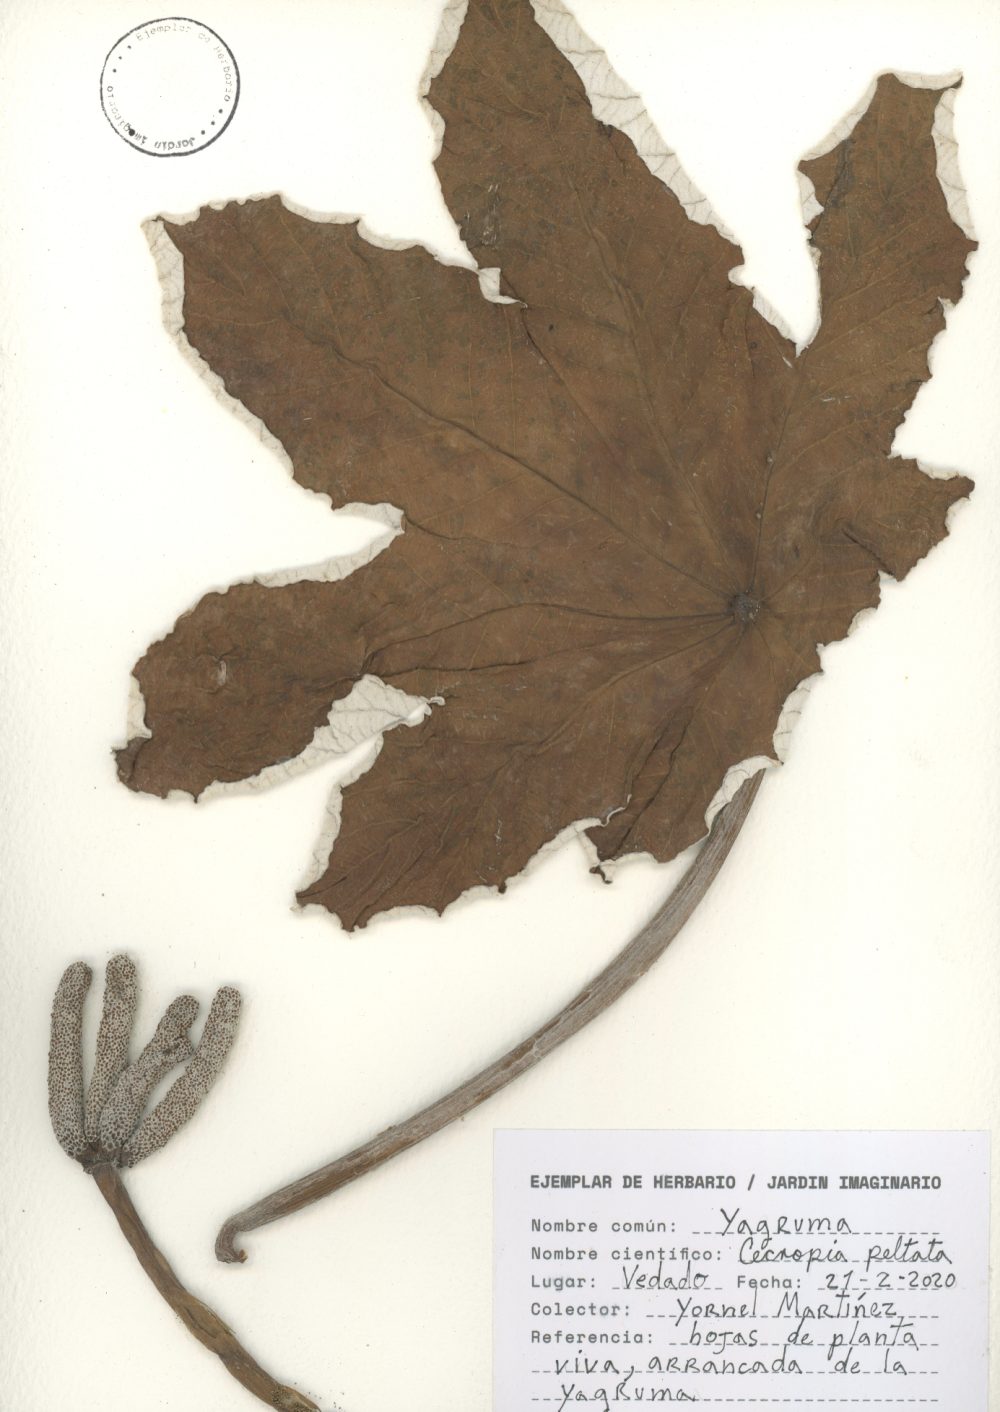 Yornel Martínez: Jardín imaginario/Herbarium (Yagruma/Ameisenbaum) (2020). Foto: Yornel Martínez.